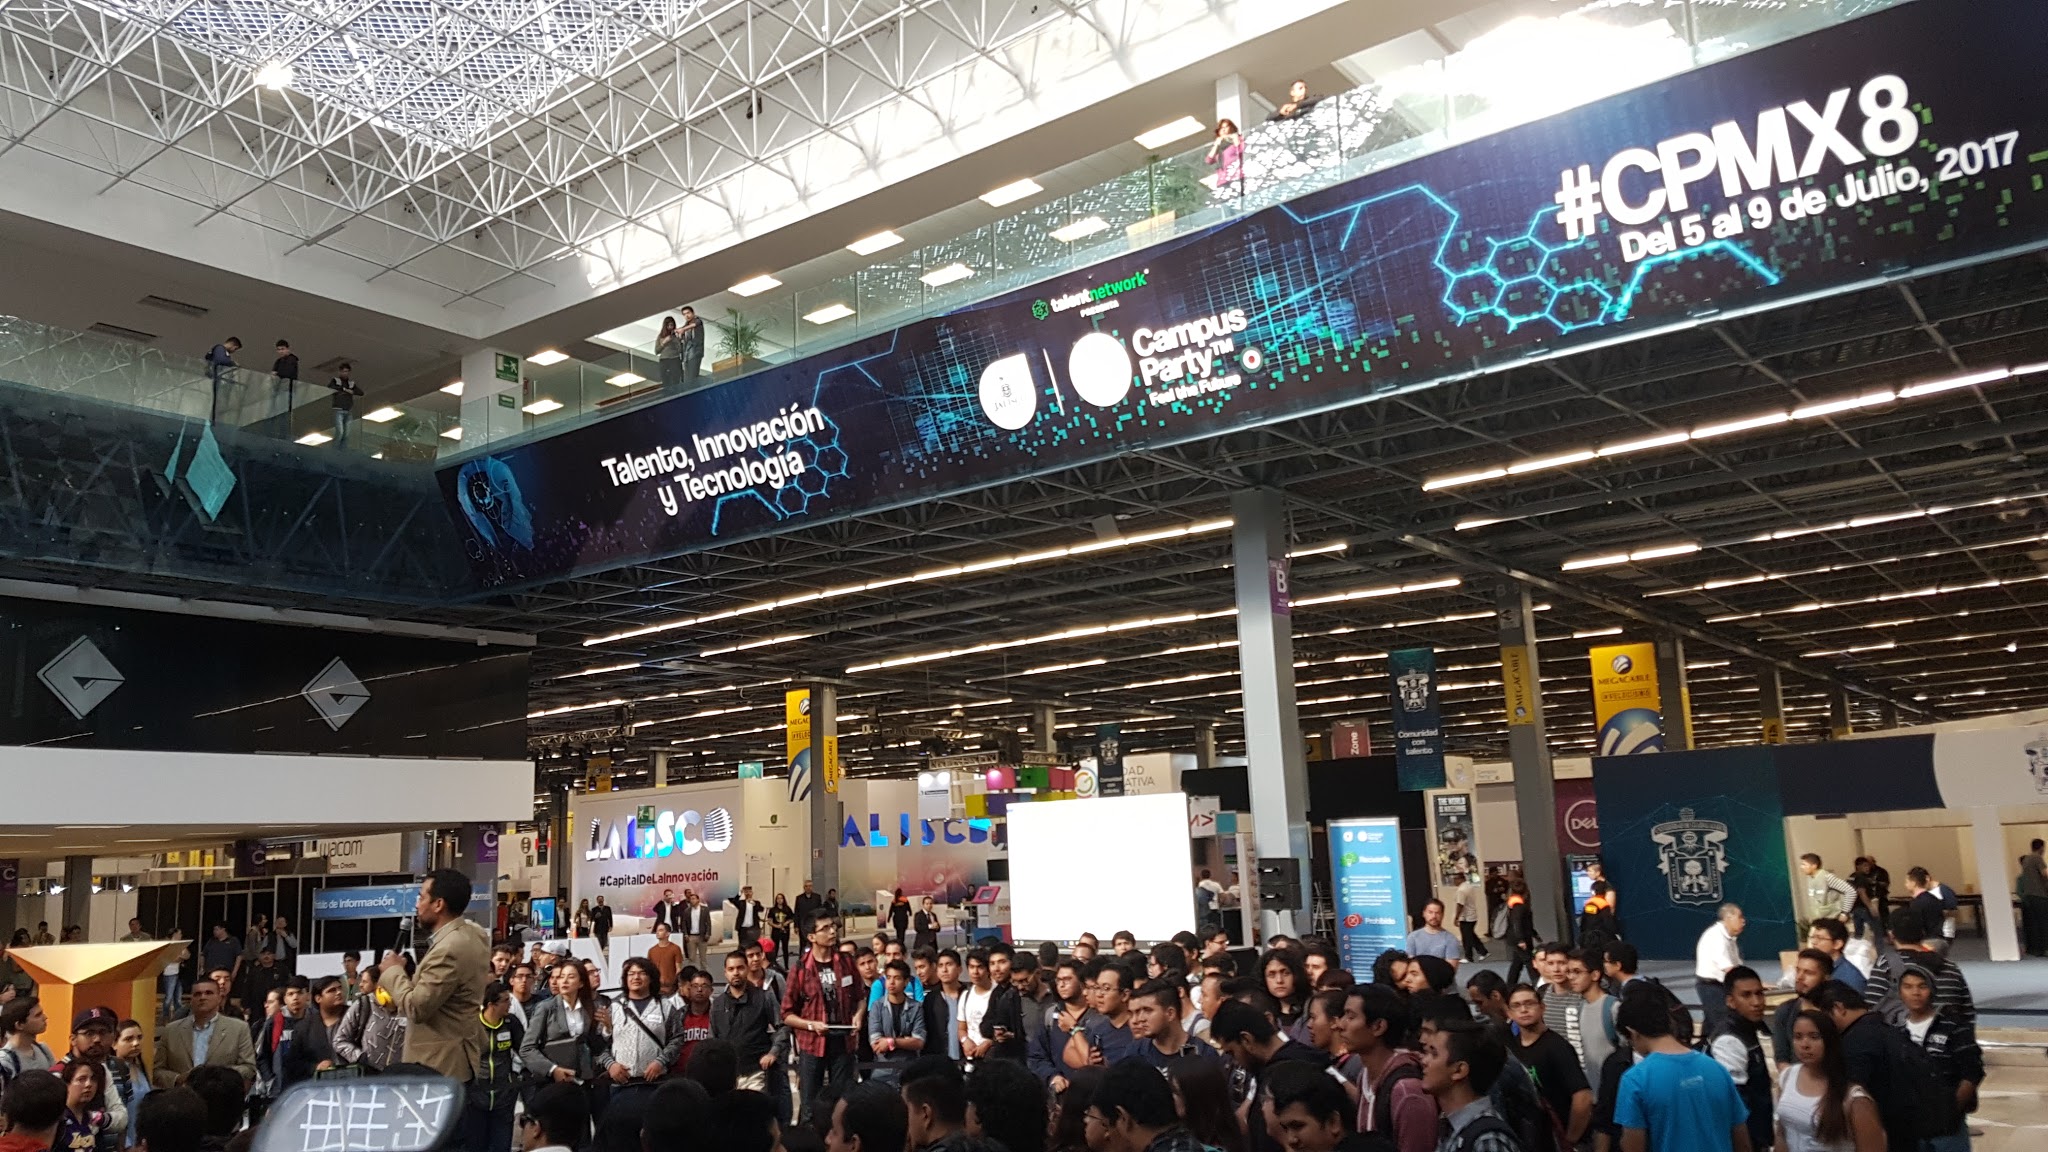 Ya se dio inicio al mayor evento de tecnología en México, el Campus Party es un mar de tecnología